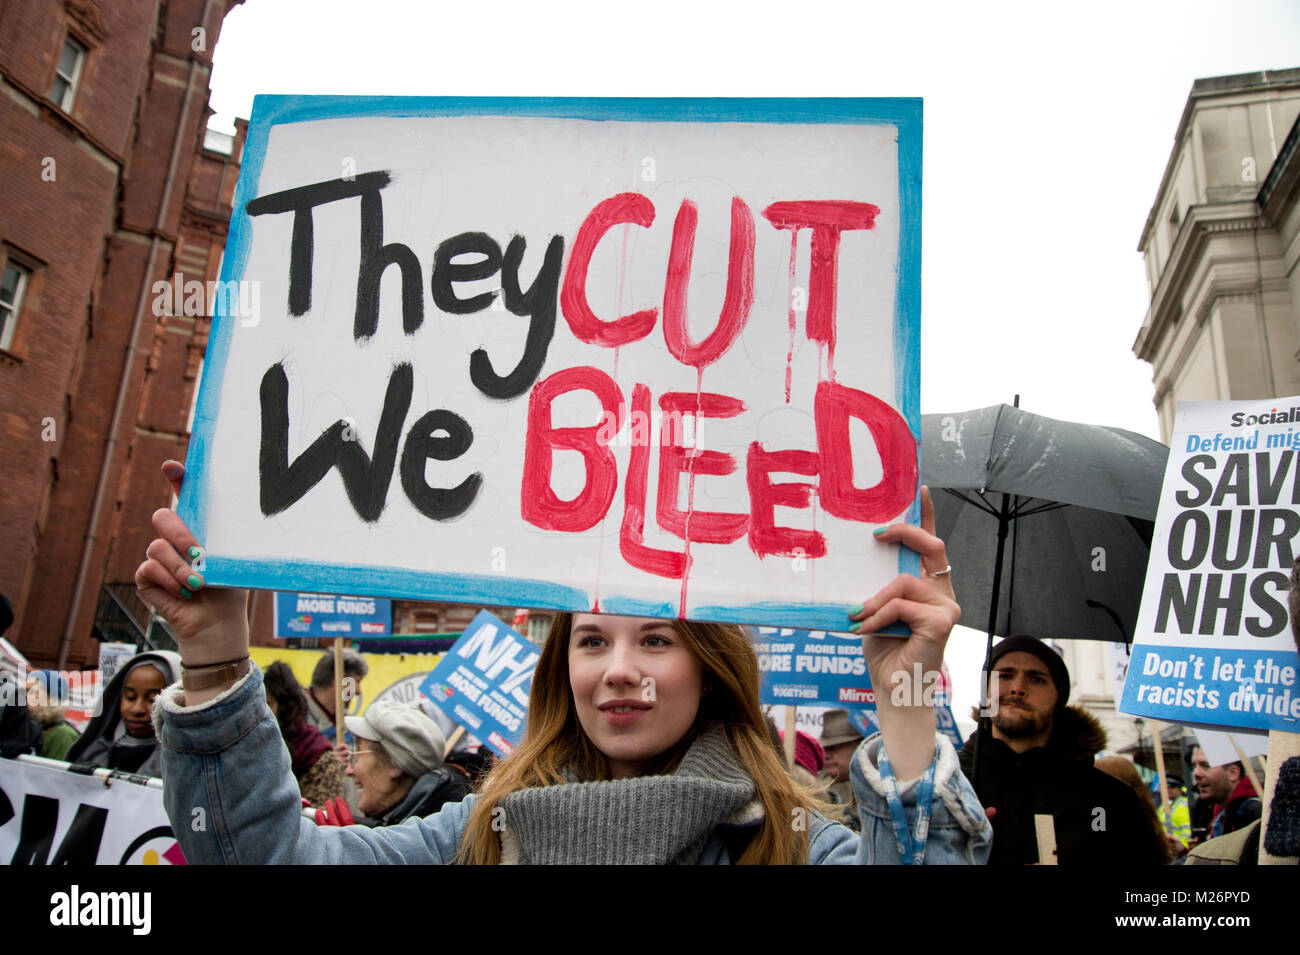 Manifestation appelée par l'Assemblée du peuple à l'appui de la NHS (National Health Service}. Une jeune femme est titulaire d'une affiche disant : "Ils nous coupe' purge Banque D'Images